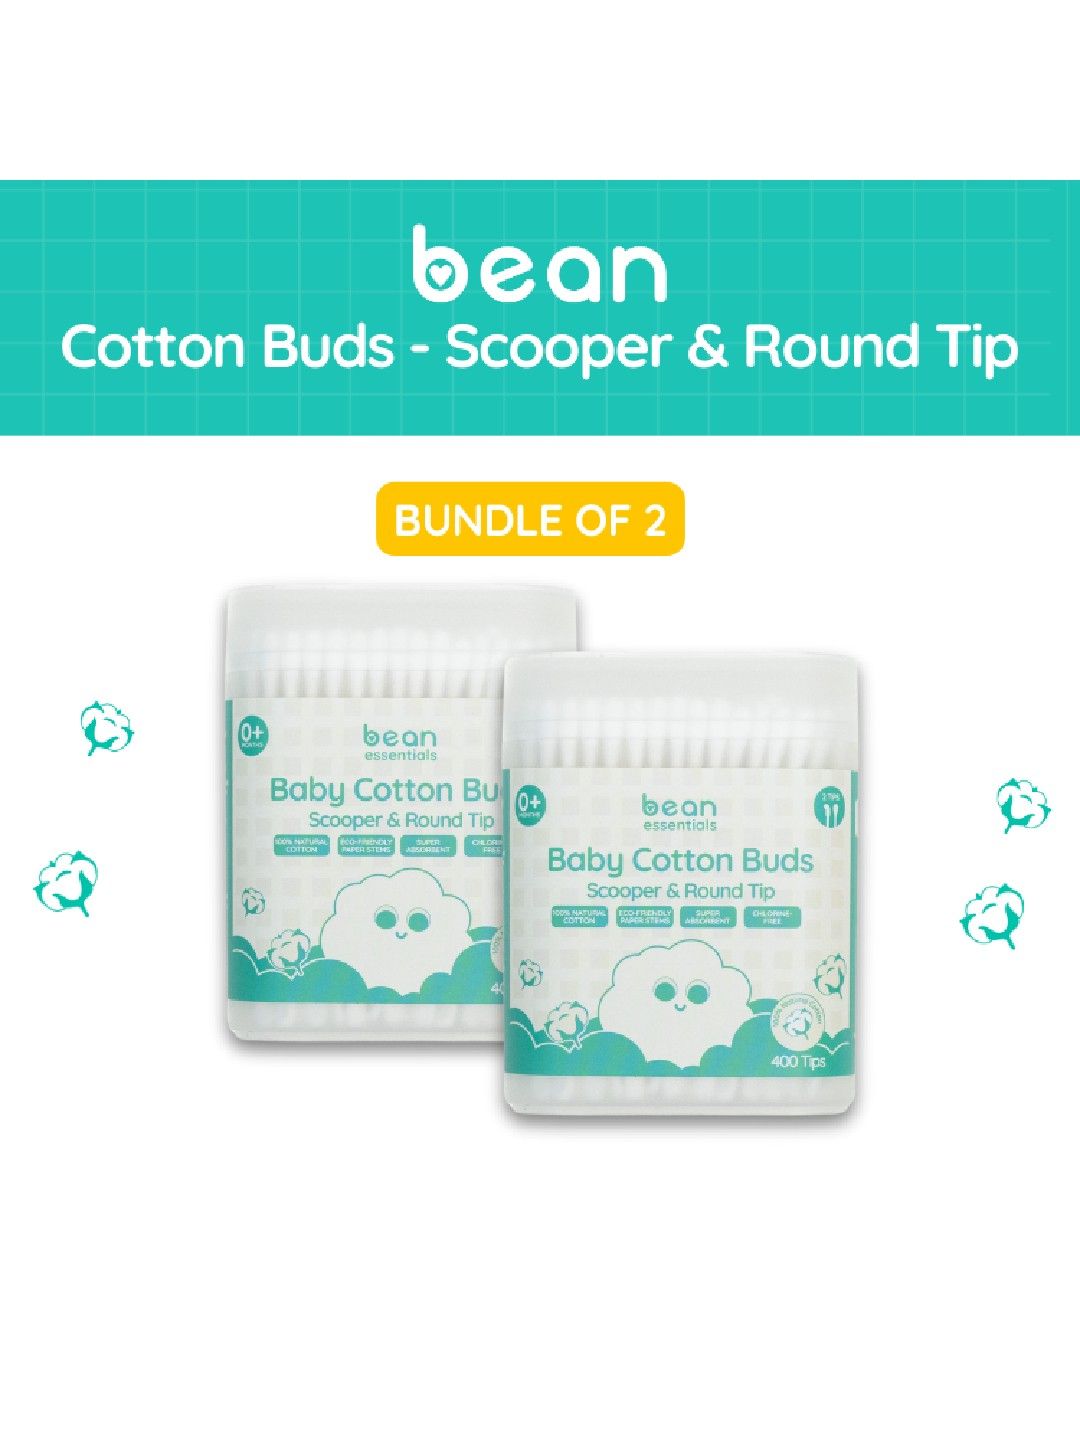 bean essentials [Bundle of 2] Scooper & Round Cotton Buds (400 tips) x 2